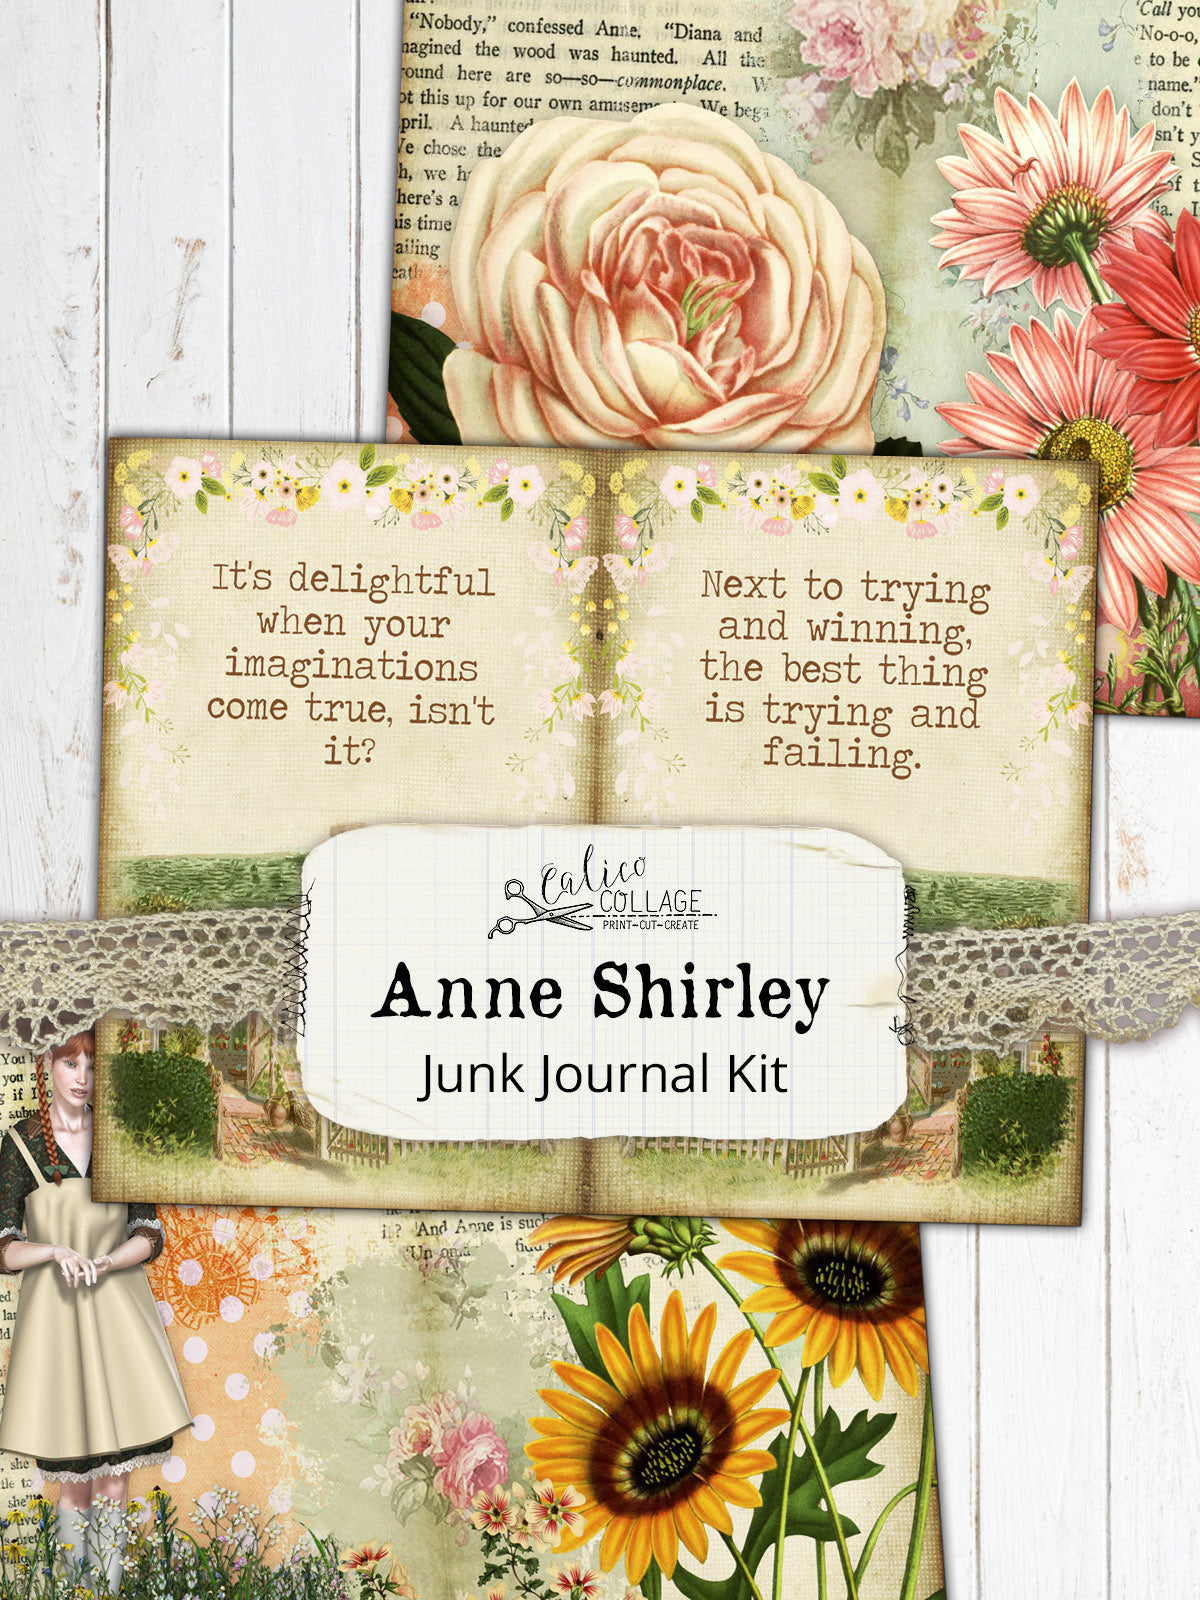 Anne of Green Gables Junk Journal Kit